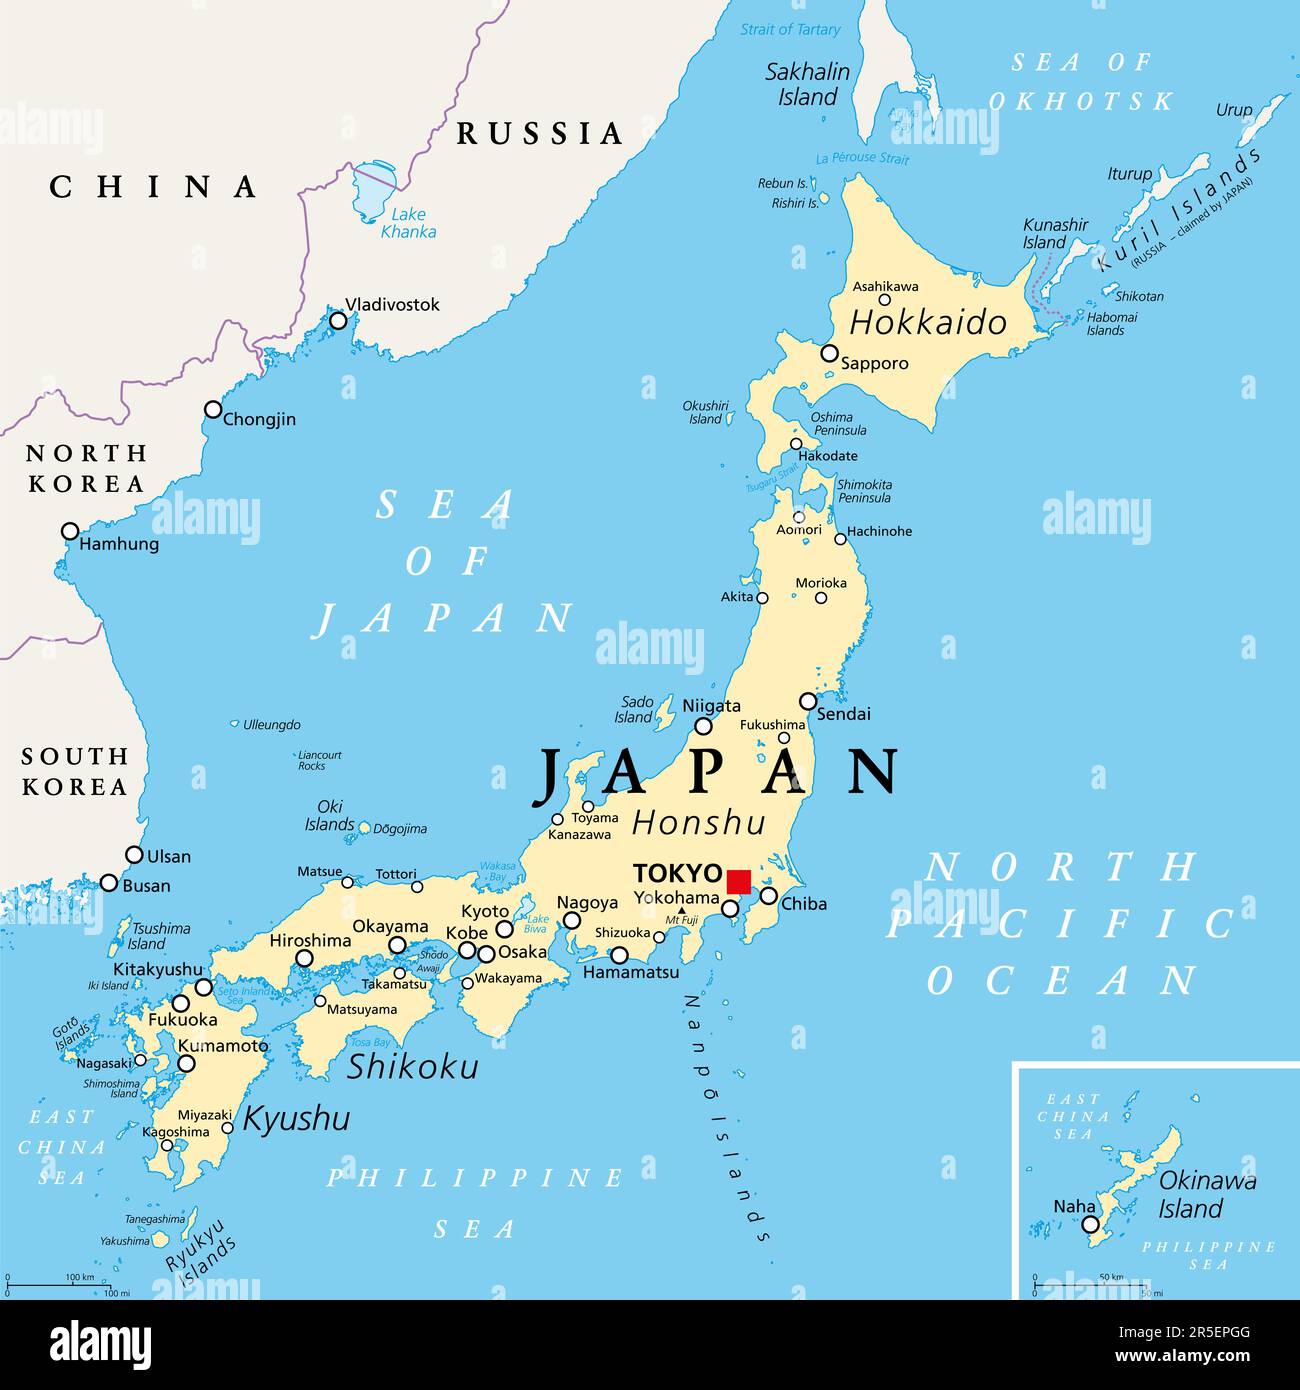 Mappa politica del Giappone. Isole principali Honshu, Hokkaido, Kyushu, Shikoku e Okinawa. Paese dell'isola dell'Asia orientale nel Pacifico settentrionale. Foto Stock